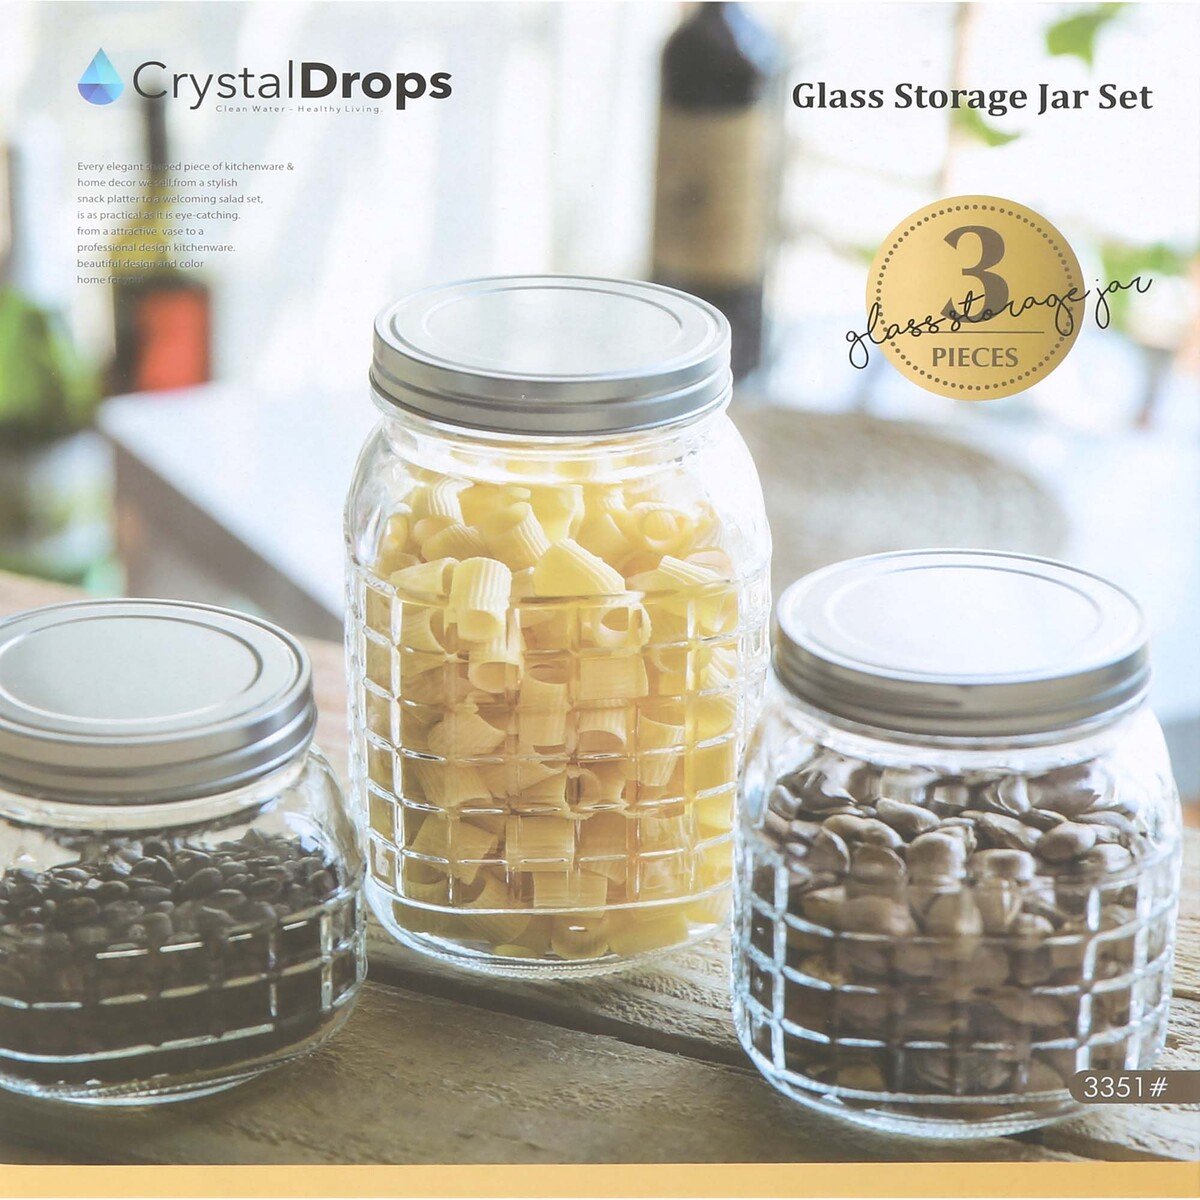 Crystal Drops Glass Storage Jar 3pcs 3351